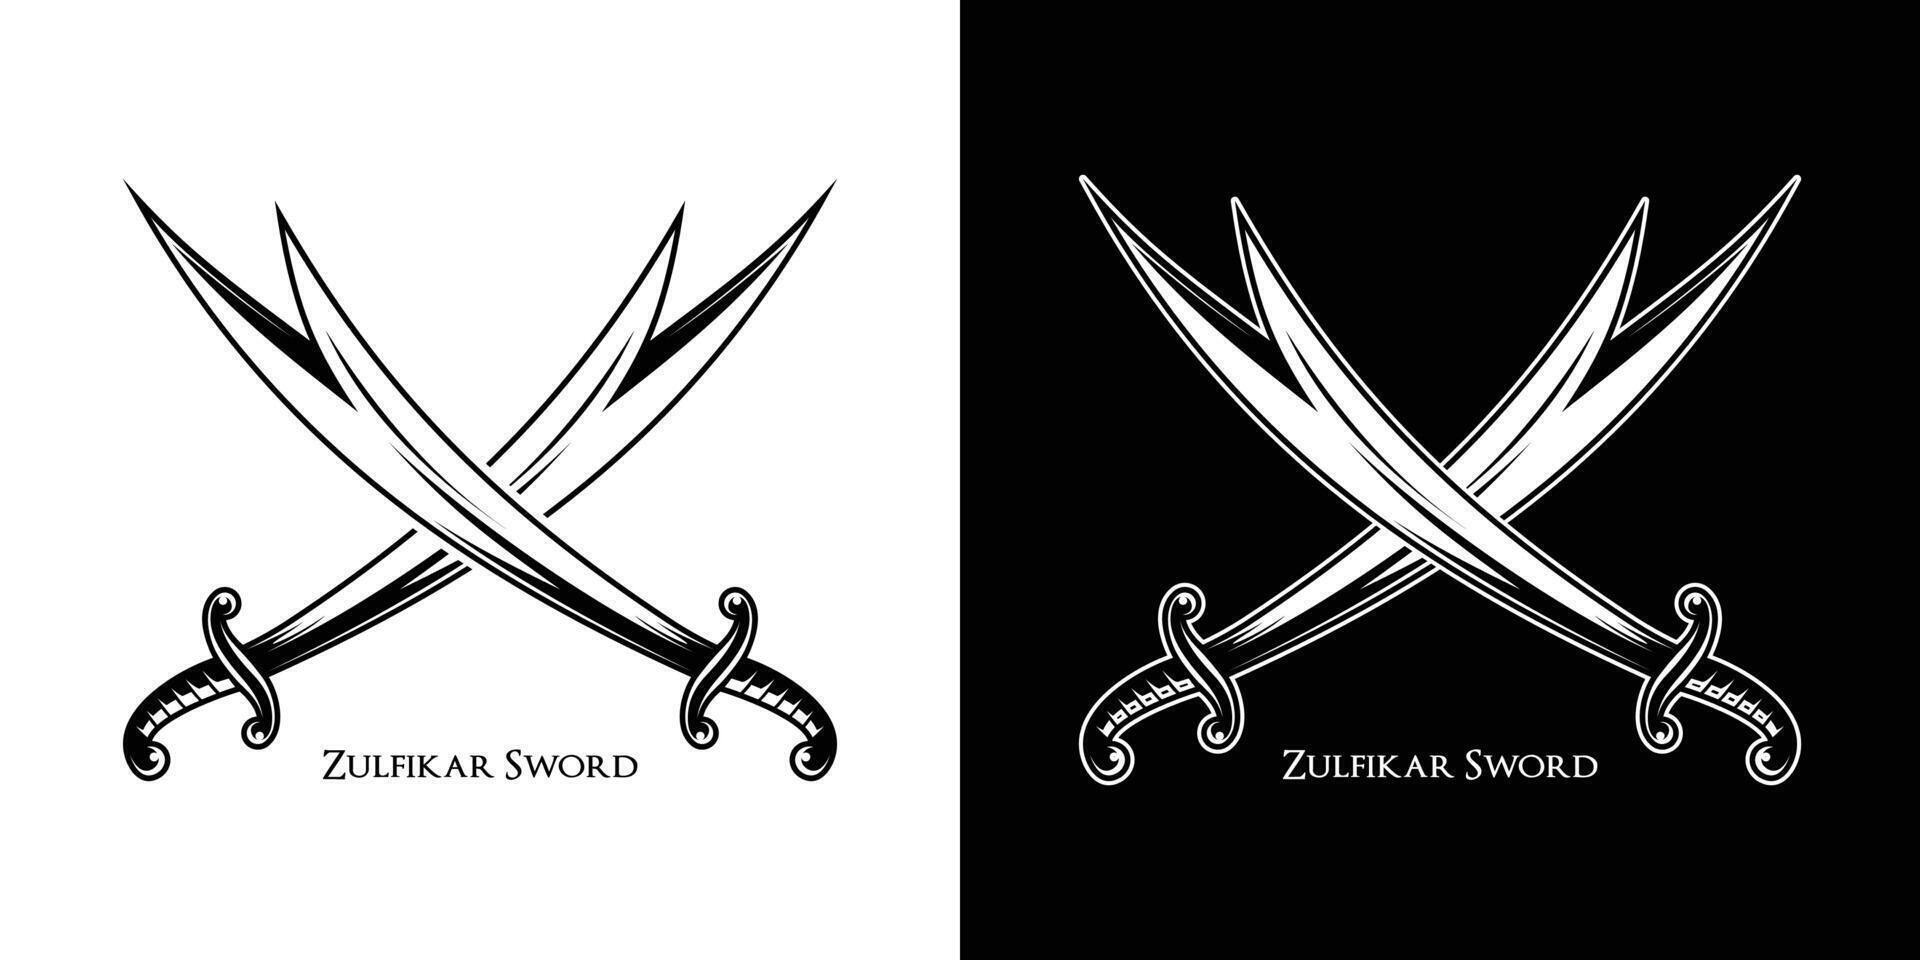 de elegant arab svärd illustration vektor